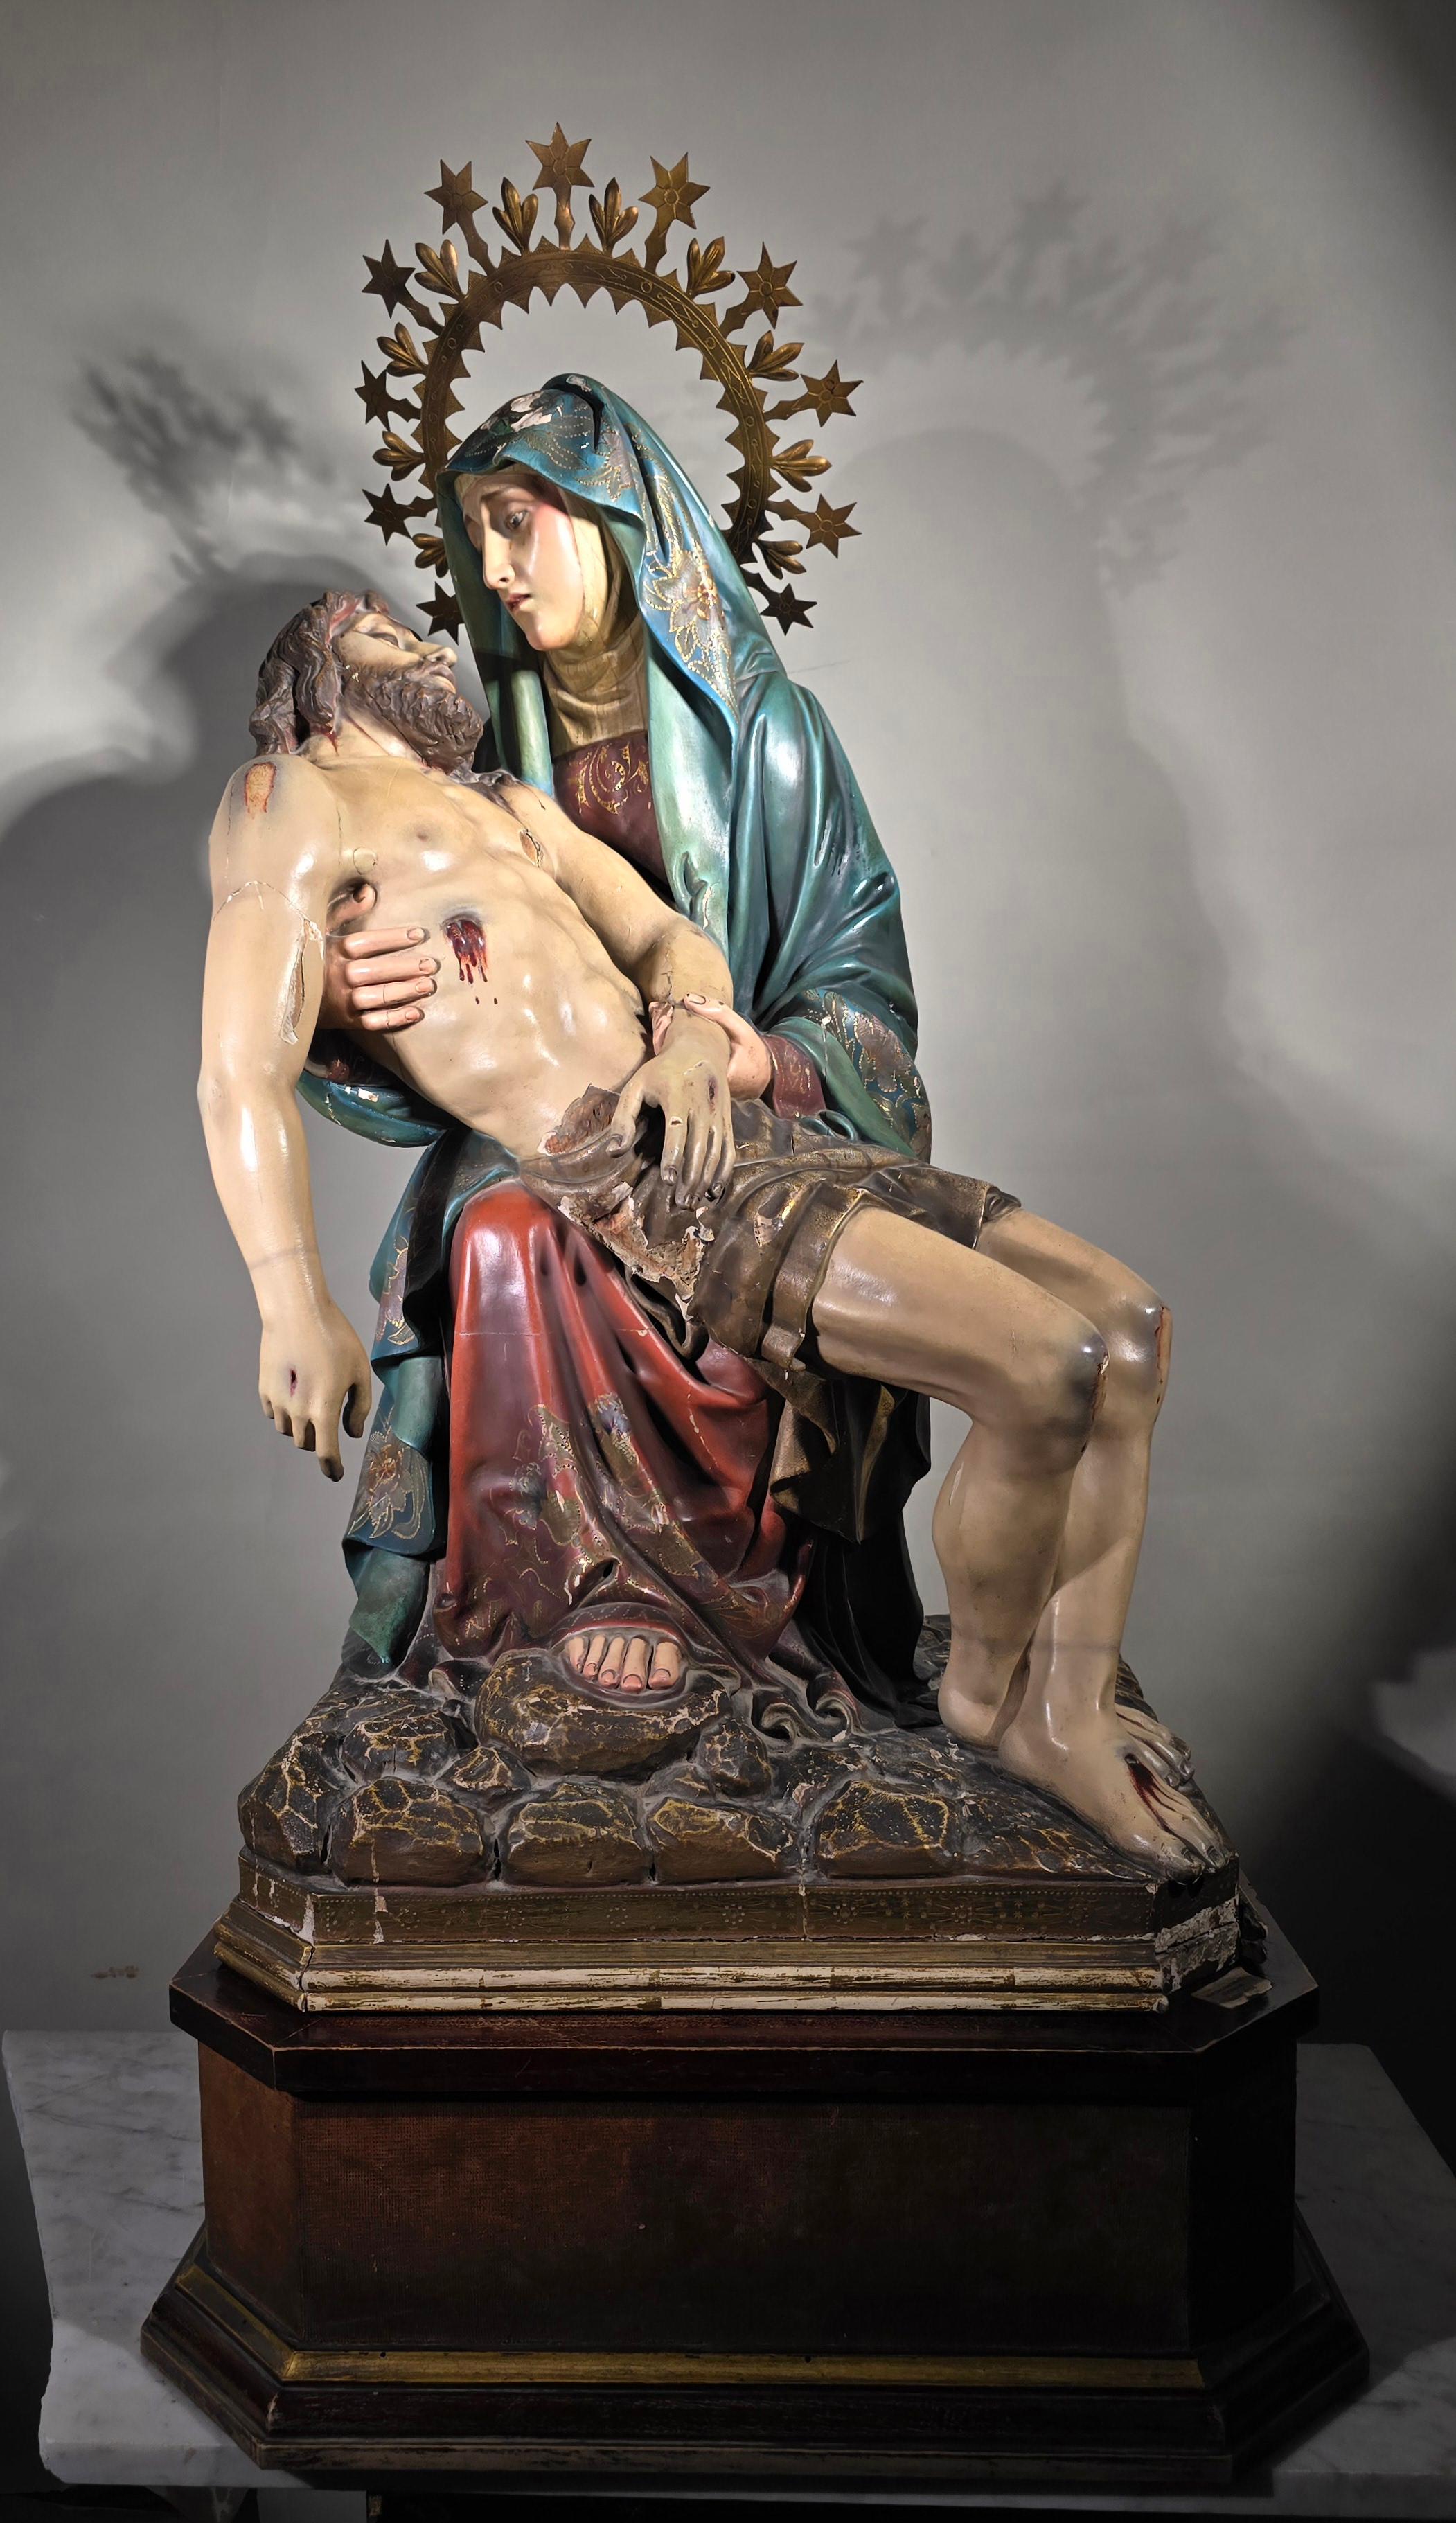 Tauchen Sie ein in die ergreifende Schönheit dieser bedeutenden Skulptur aus geschnitztem Holz und Polychromie, die die ikonische Szene der Pieta darstellt. Dieses Kunstwerk wurde wahrscheinlich im 19. Jahrhundert in Spanien hergestellt und ist ein